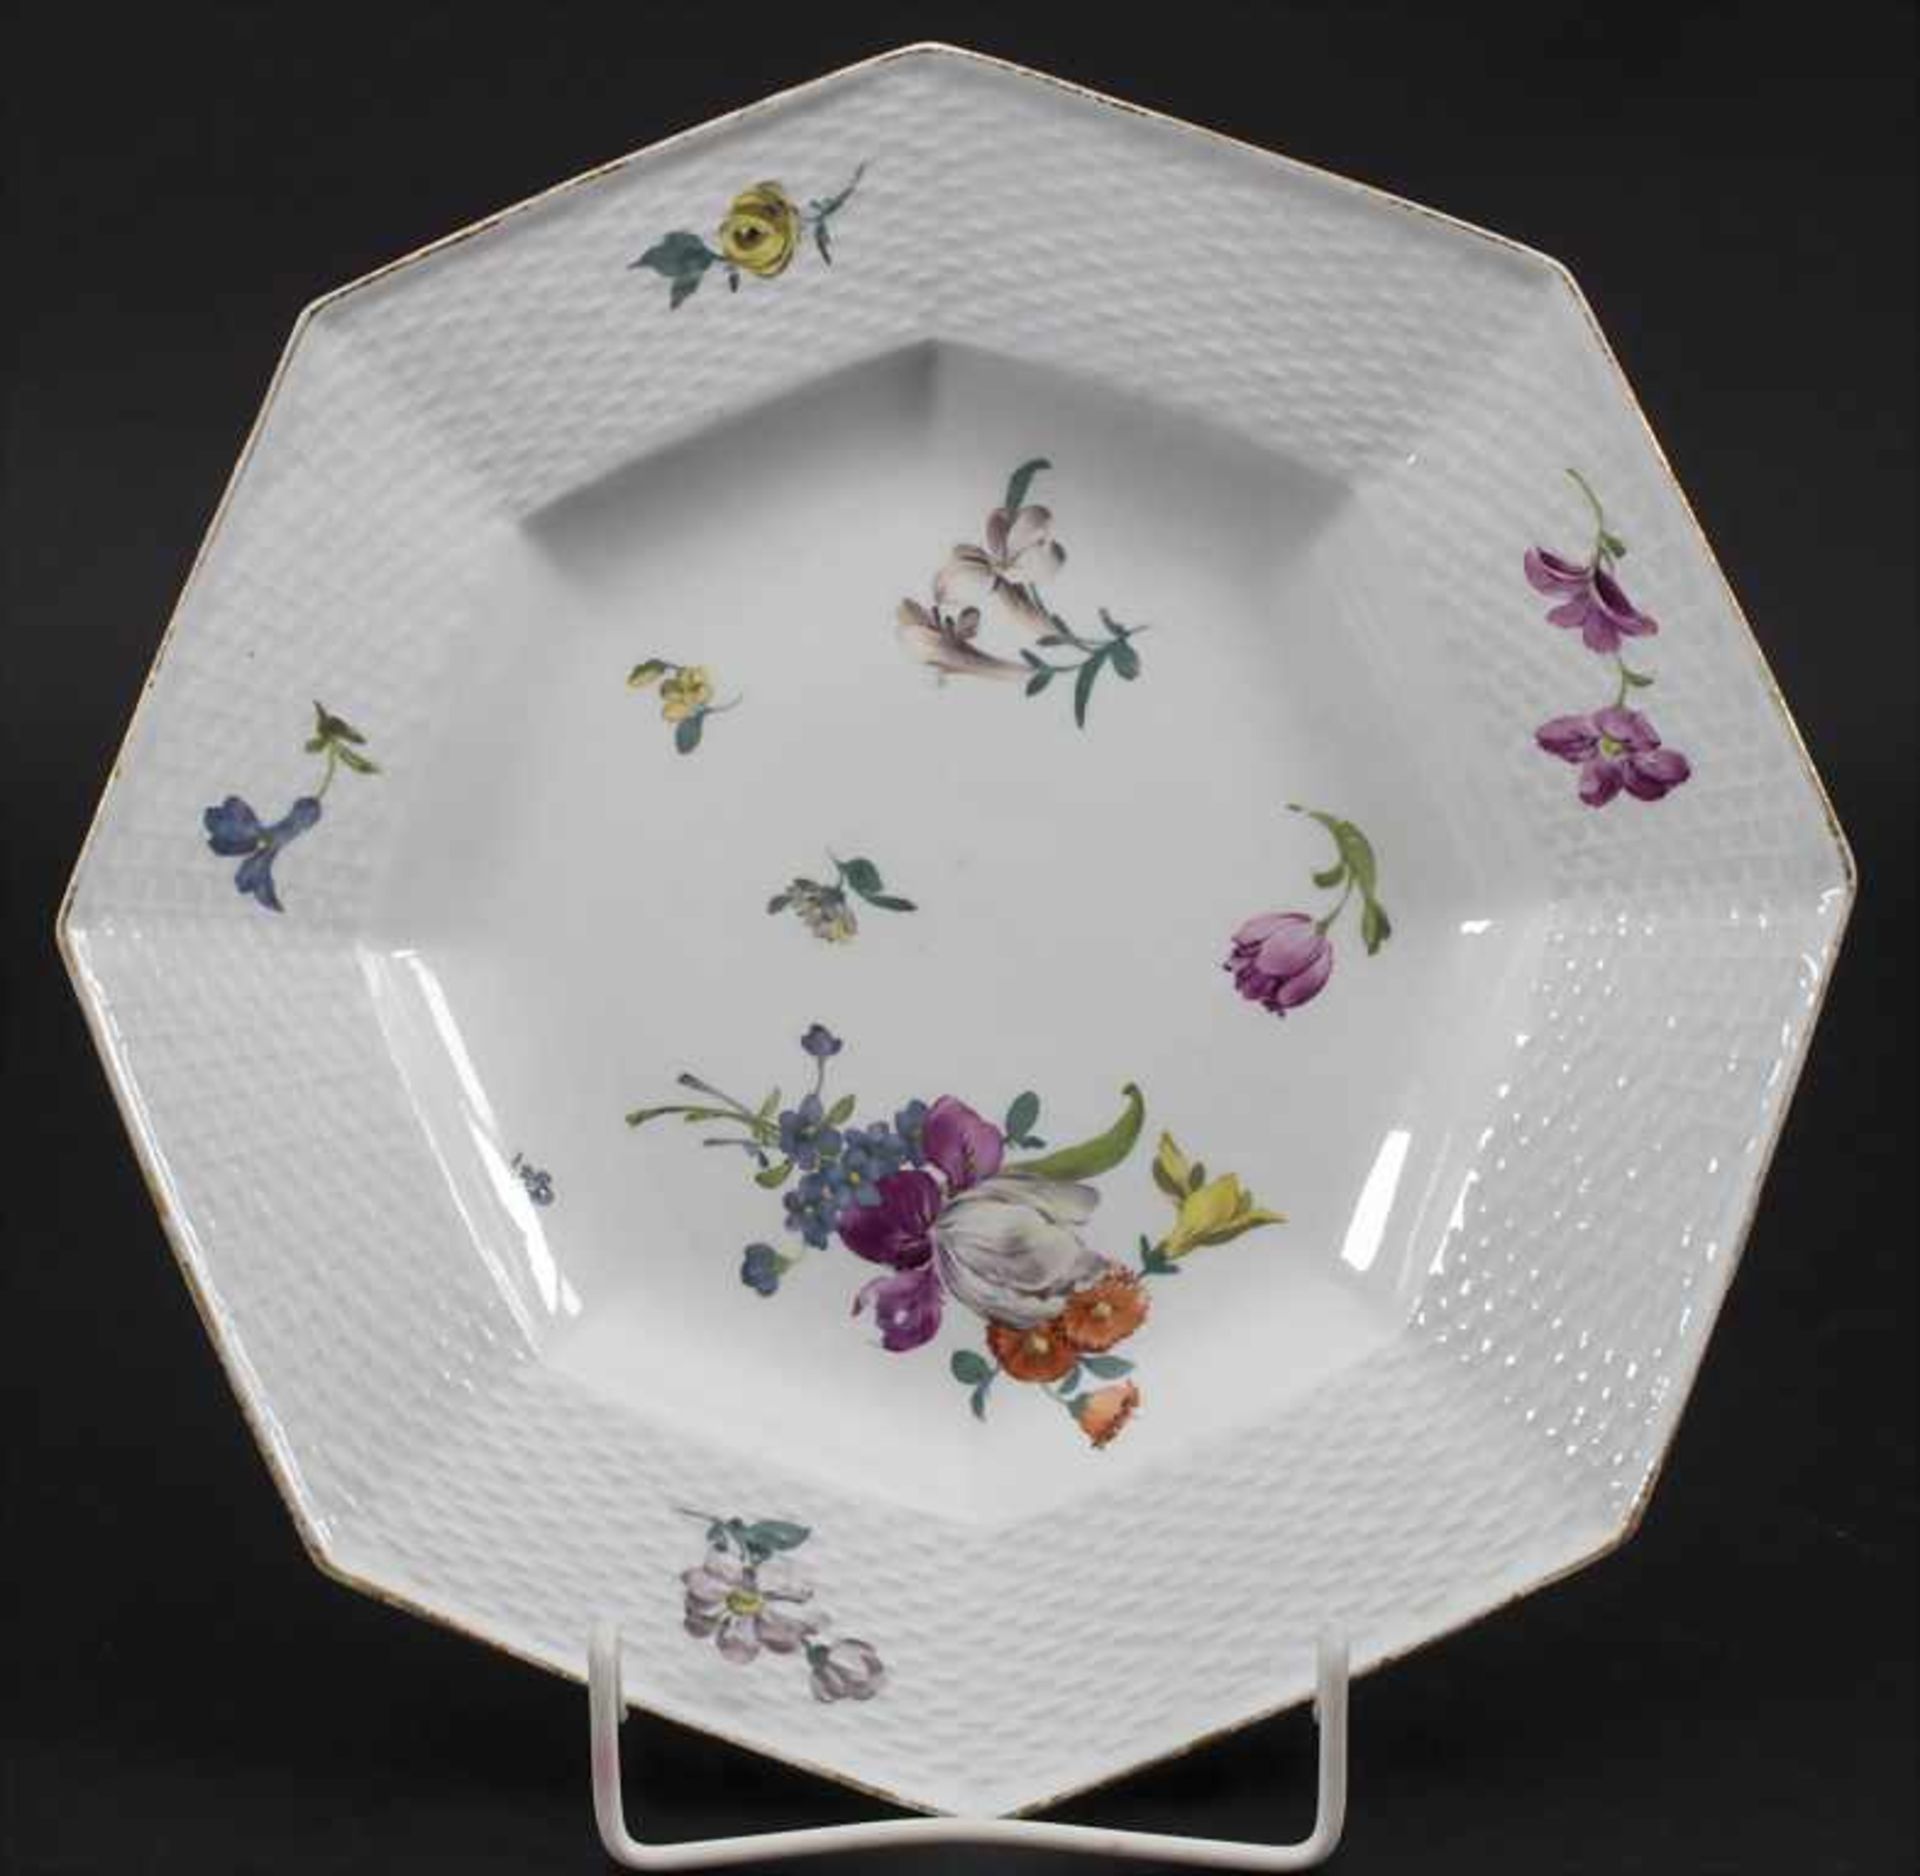 Achtpassiger Teller mit Blumen / A plate with flowers, Meissen, 1764-1773